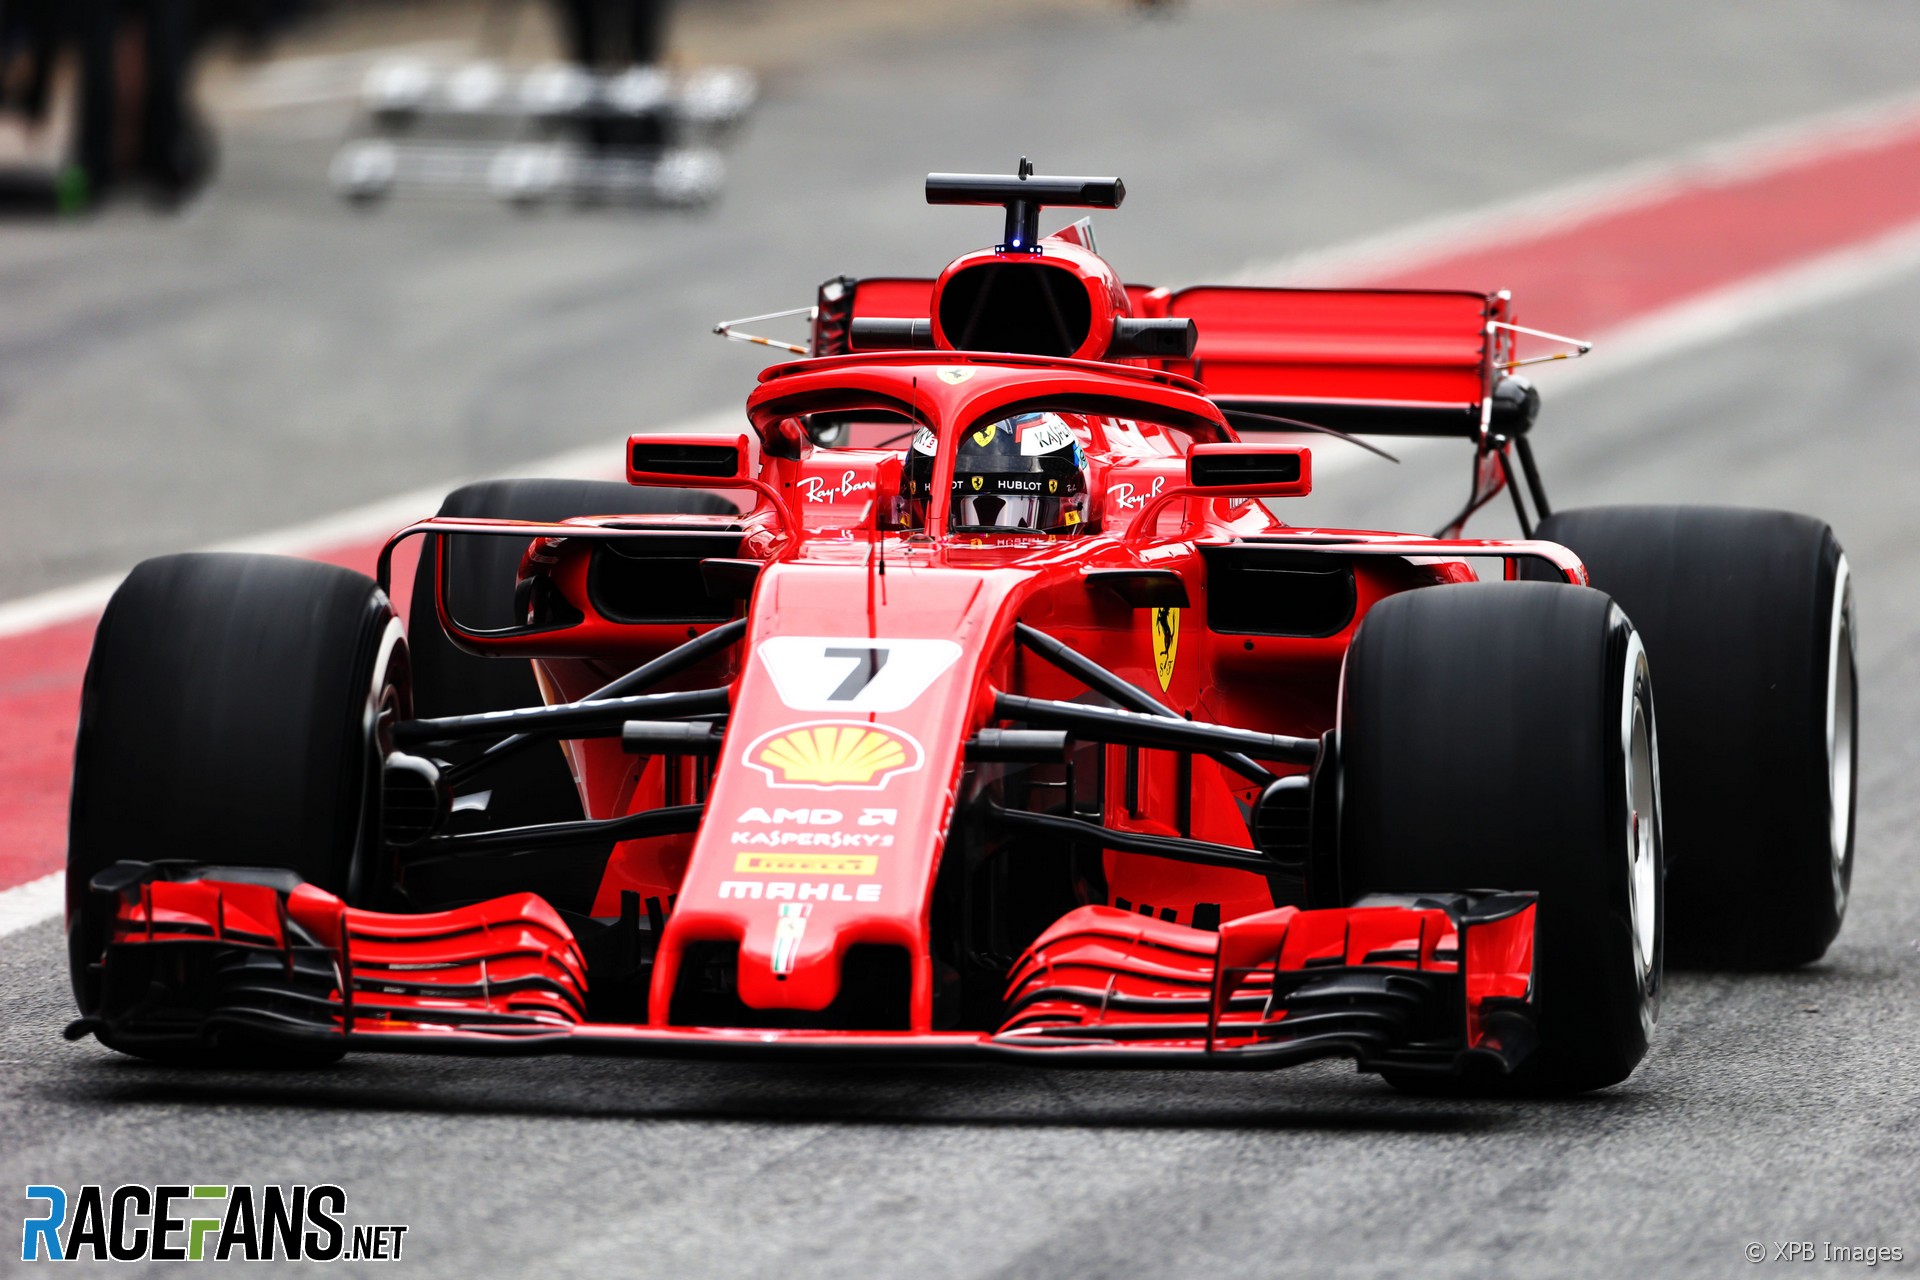 Kimi Raikkonen, Ferrari, in action.